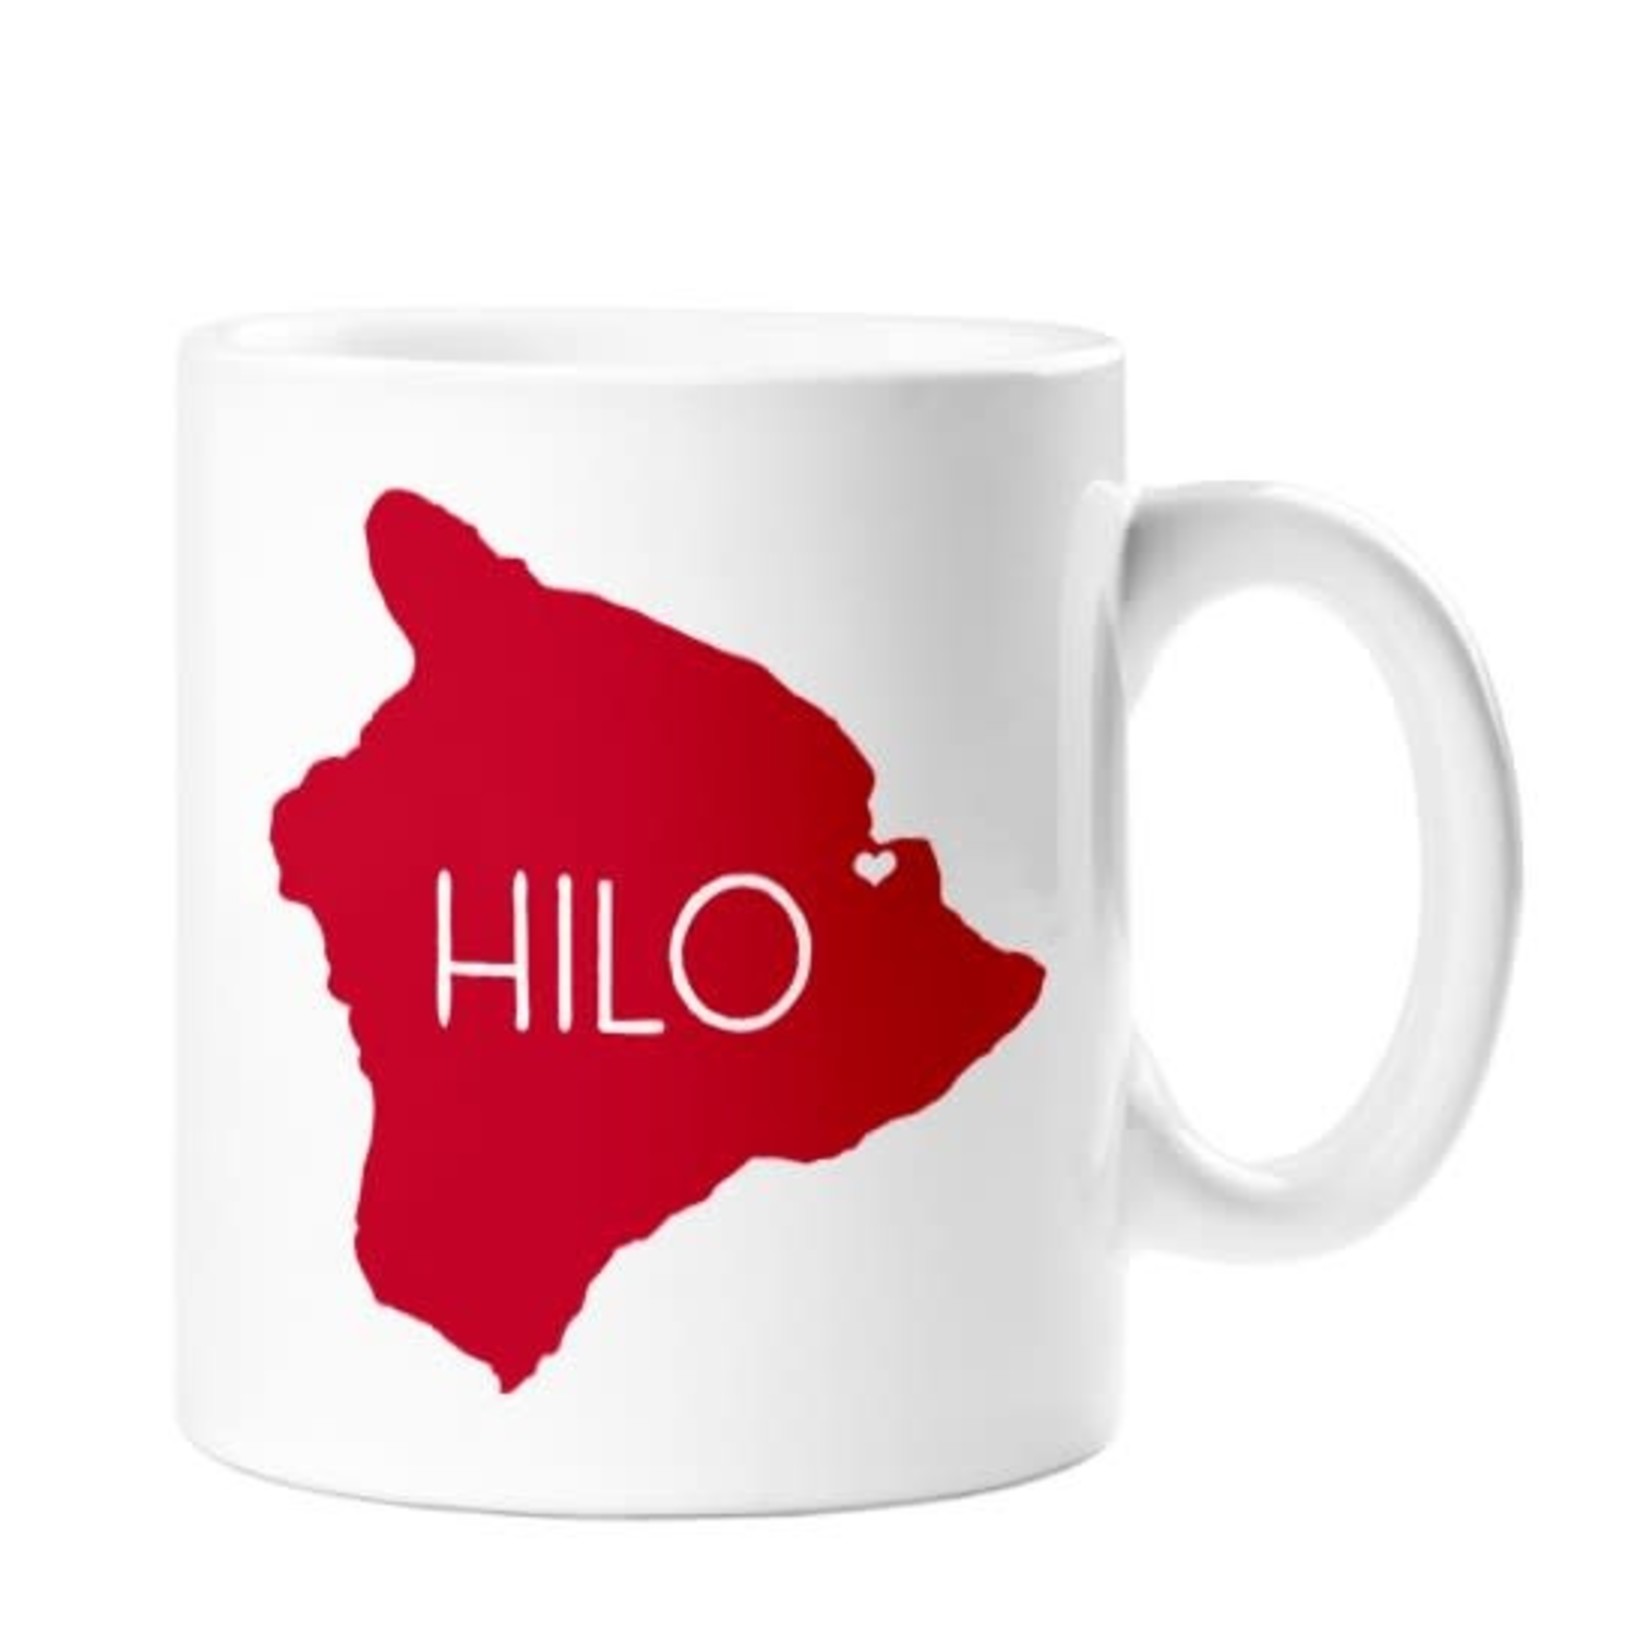 Hilo Ceramic Mug